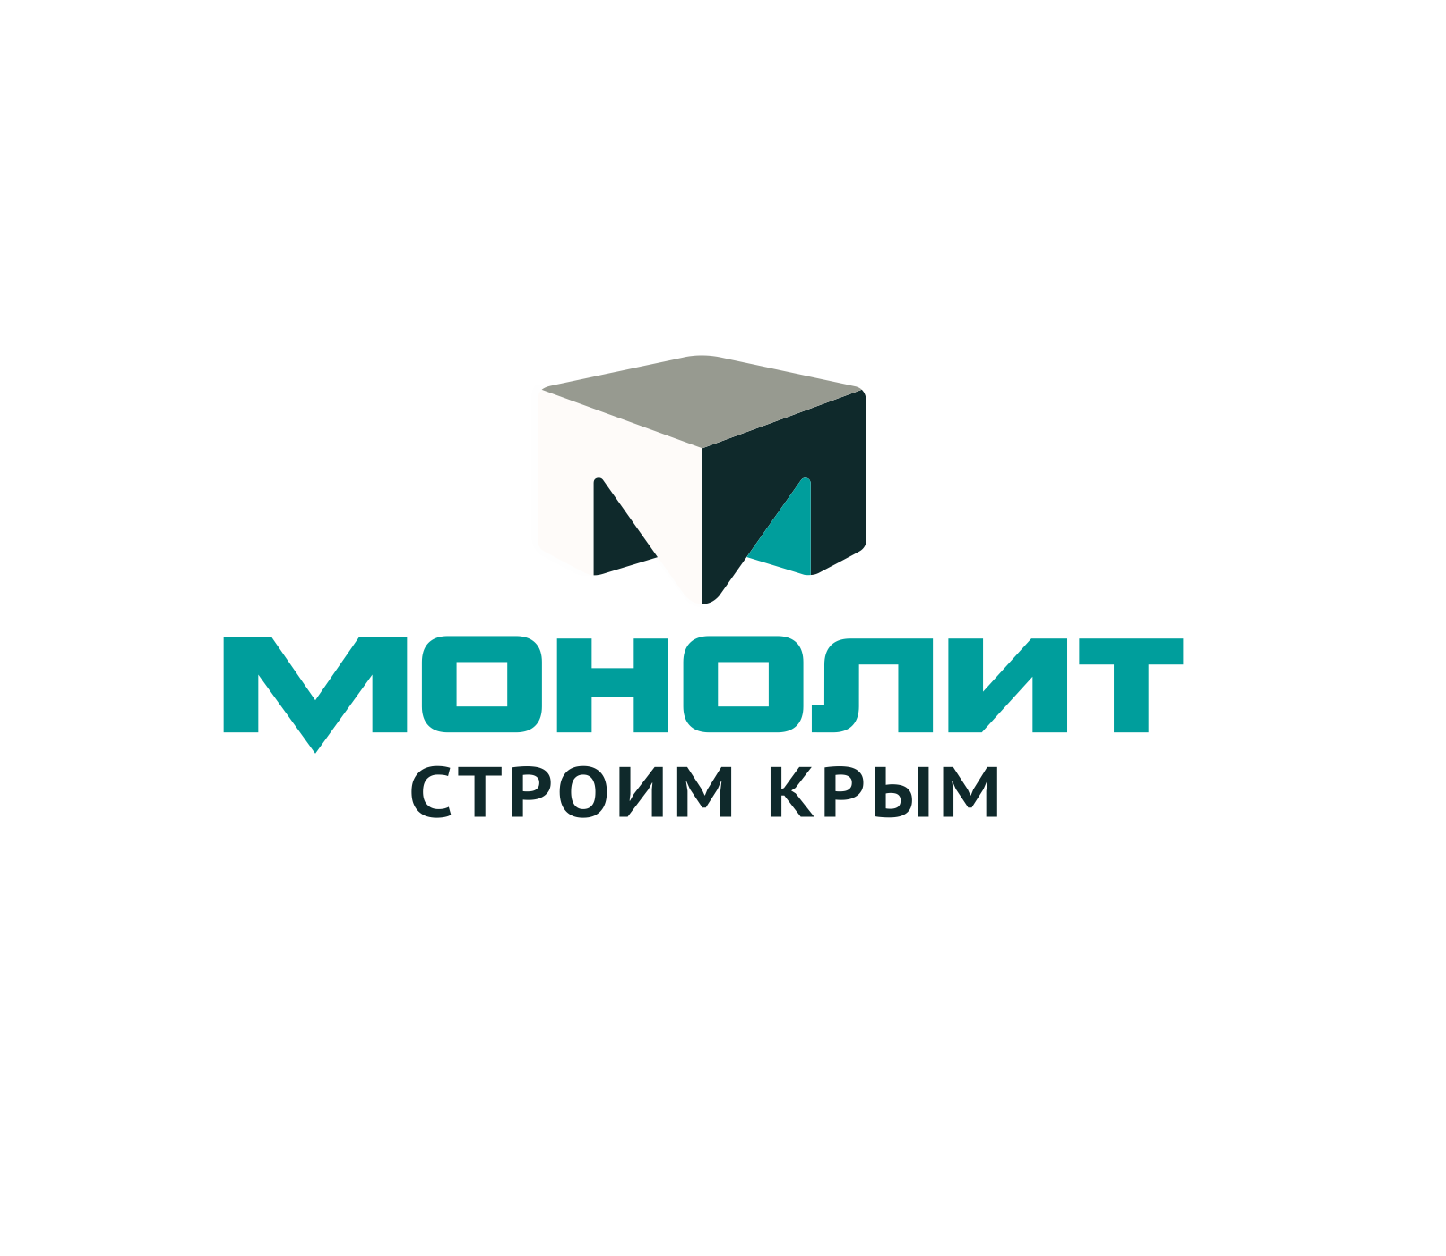 Монолит номер. Монолит группа компаний. ГК монолит Крым. Логотип строительной компании. Монолит застройщик логотип.